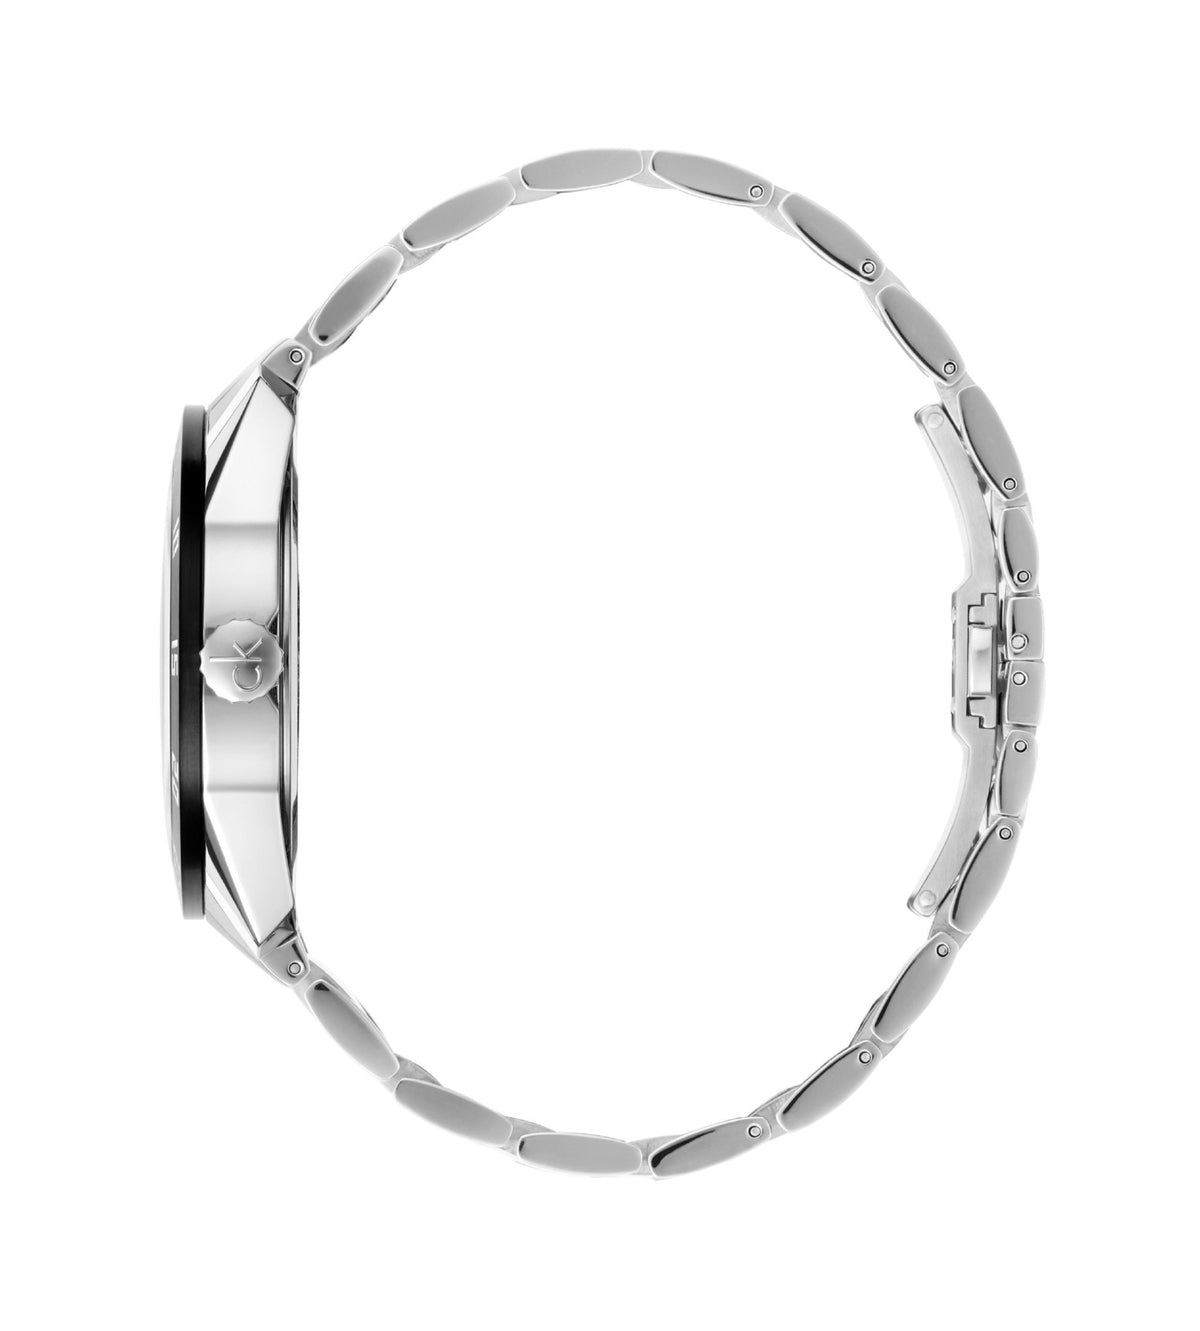 orologio Calvin Klein uomo COMPETE subacqueo acciaio K9R31C41 - bonini-gioielli